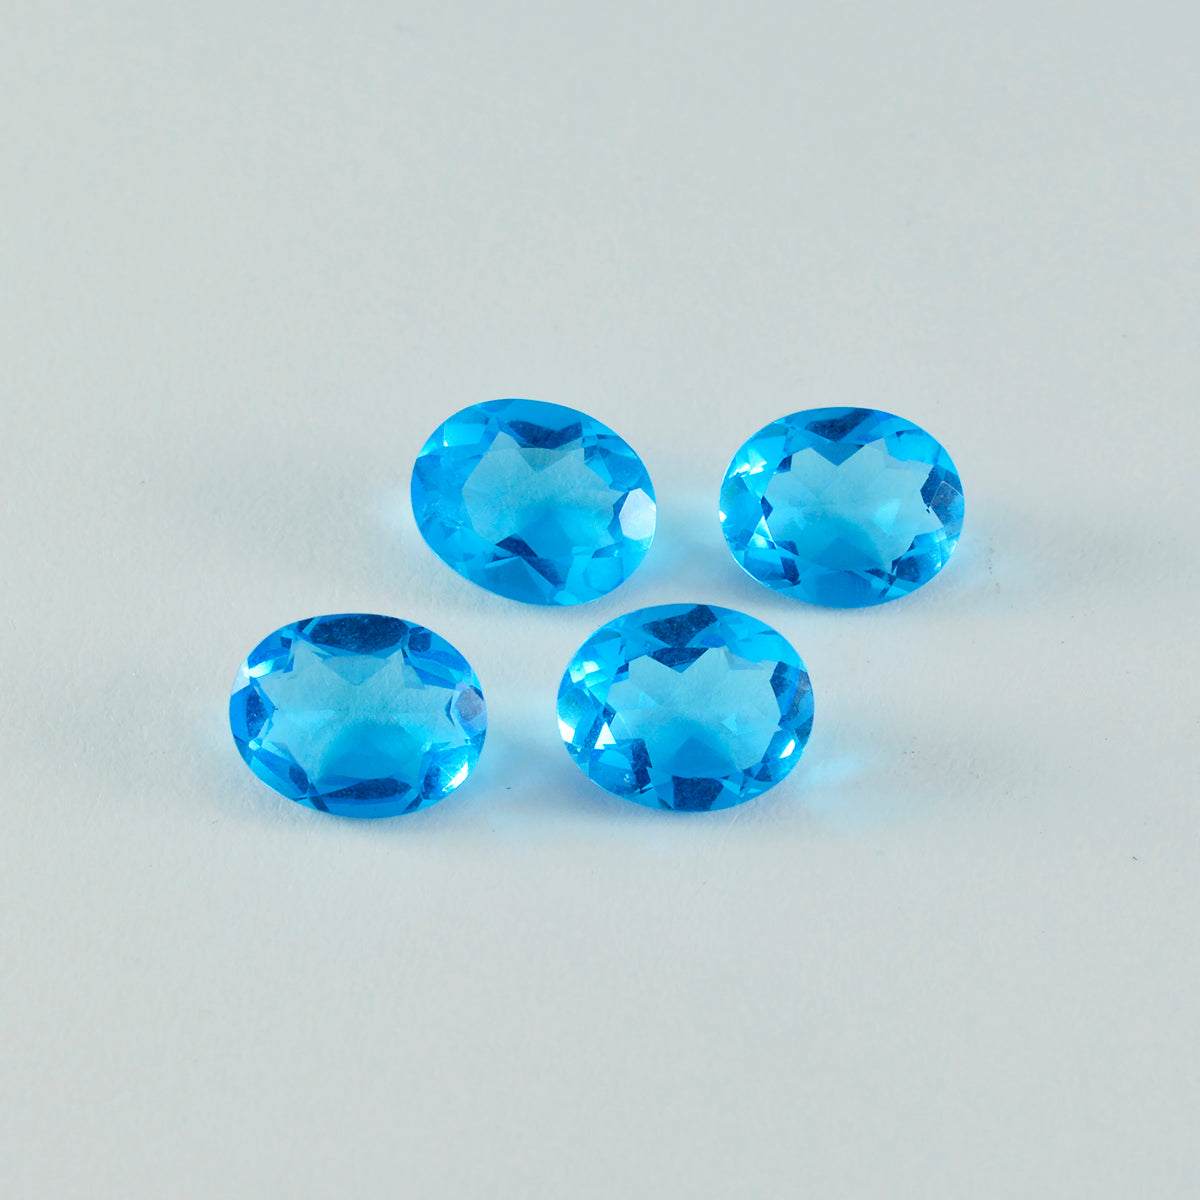 Riyogems 1PC Blue Topaz CZ gefacetteerd 12x16 mm ovale vorm mooie kwaliteitsedelsteen